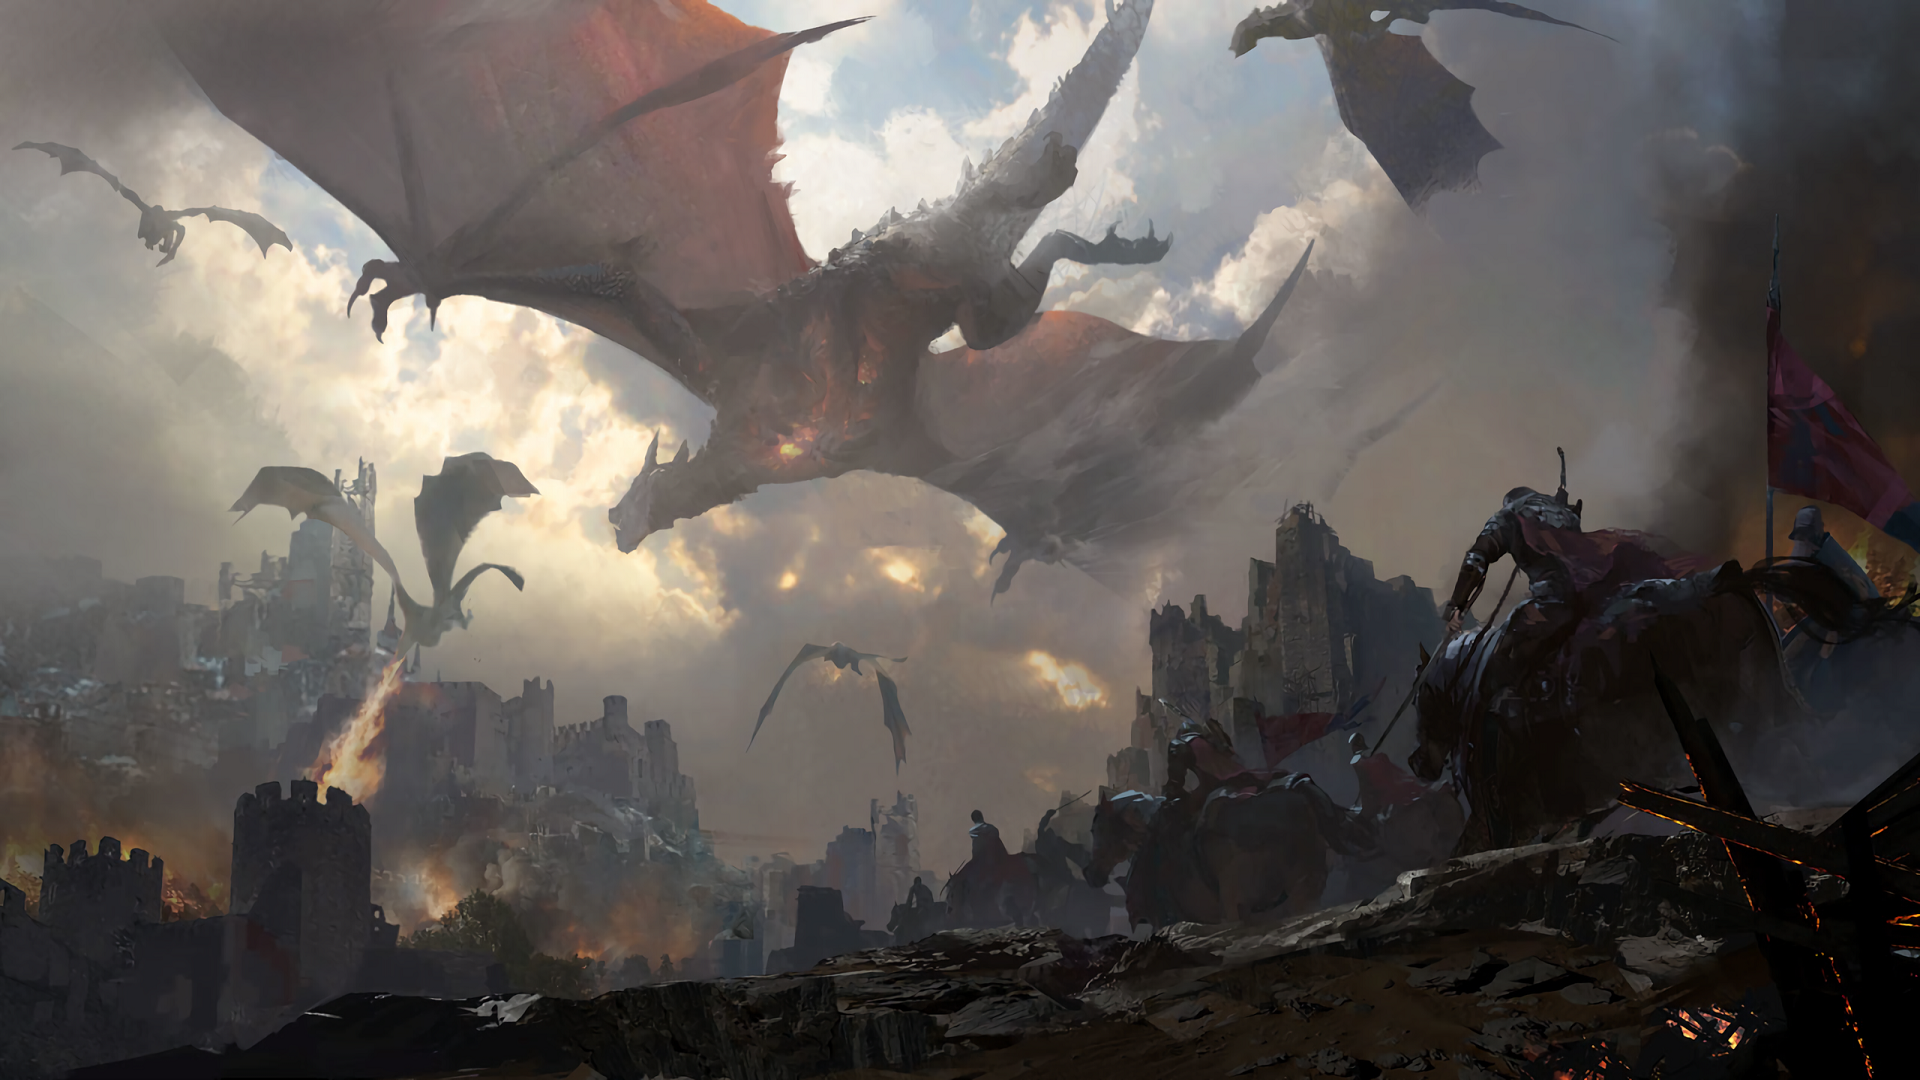 Dragon, Knights, Castle, Battle, Horses, Sky, Fire - HD Wallpaper 